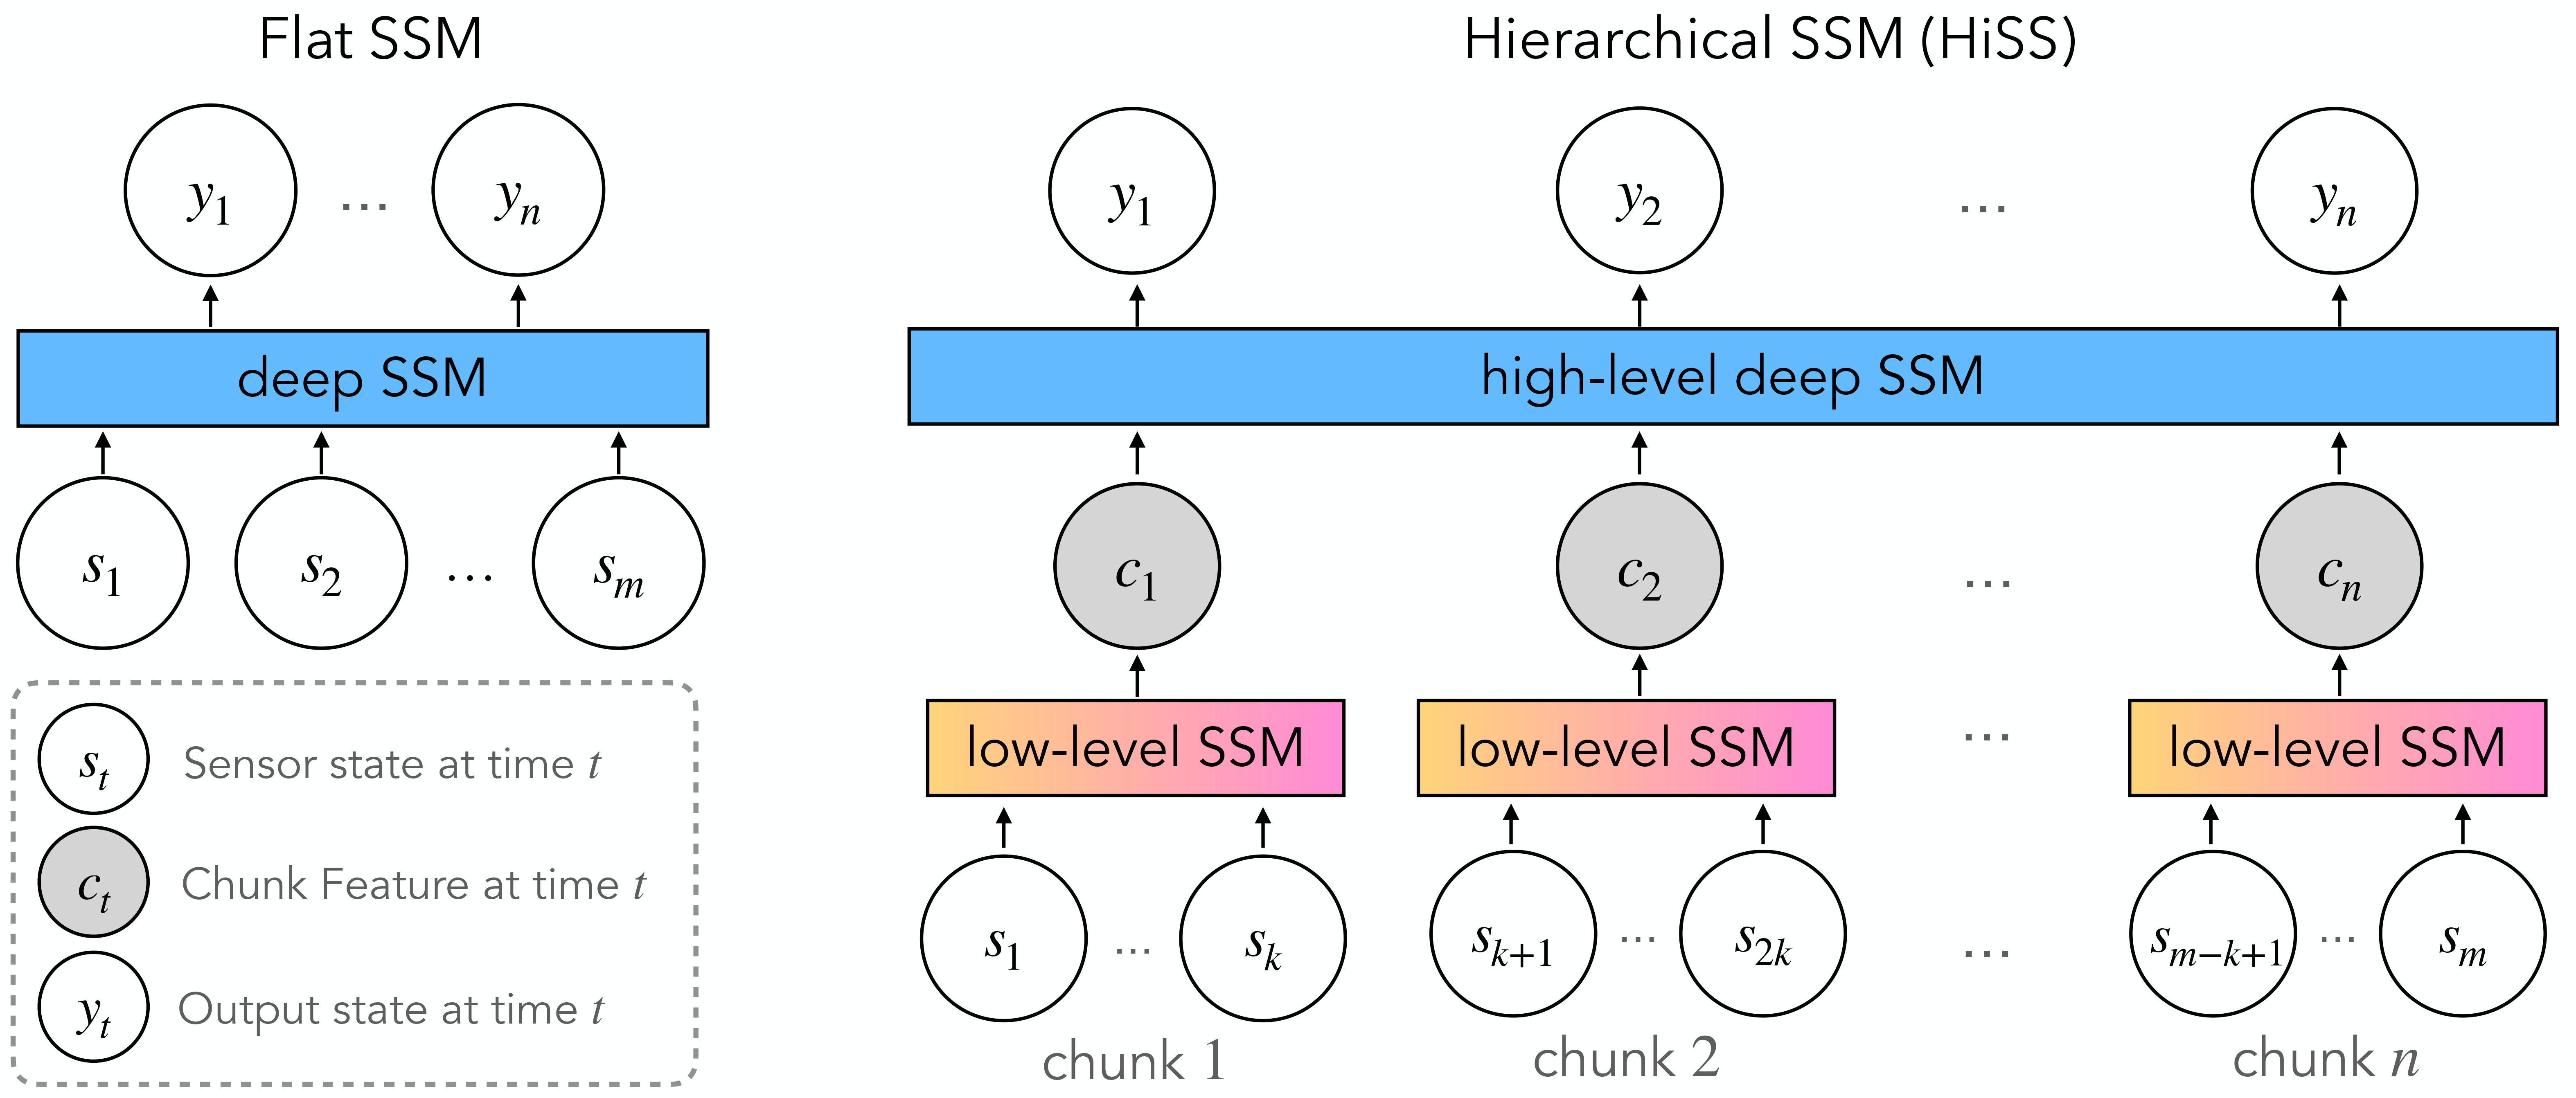 HiSS Model Architecture